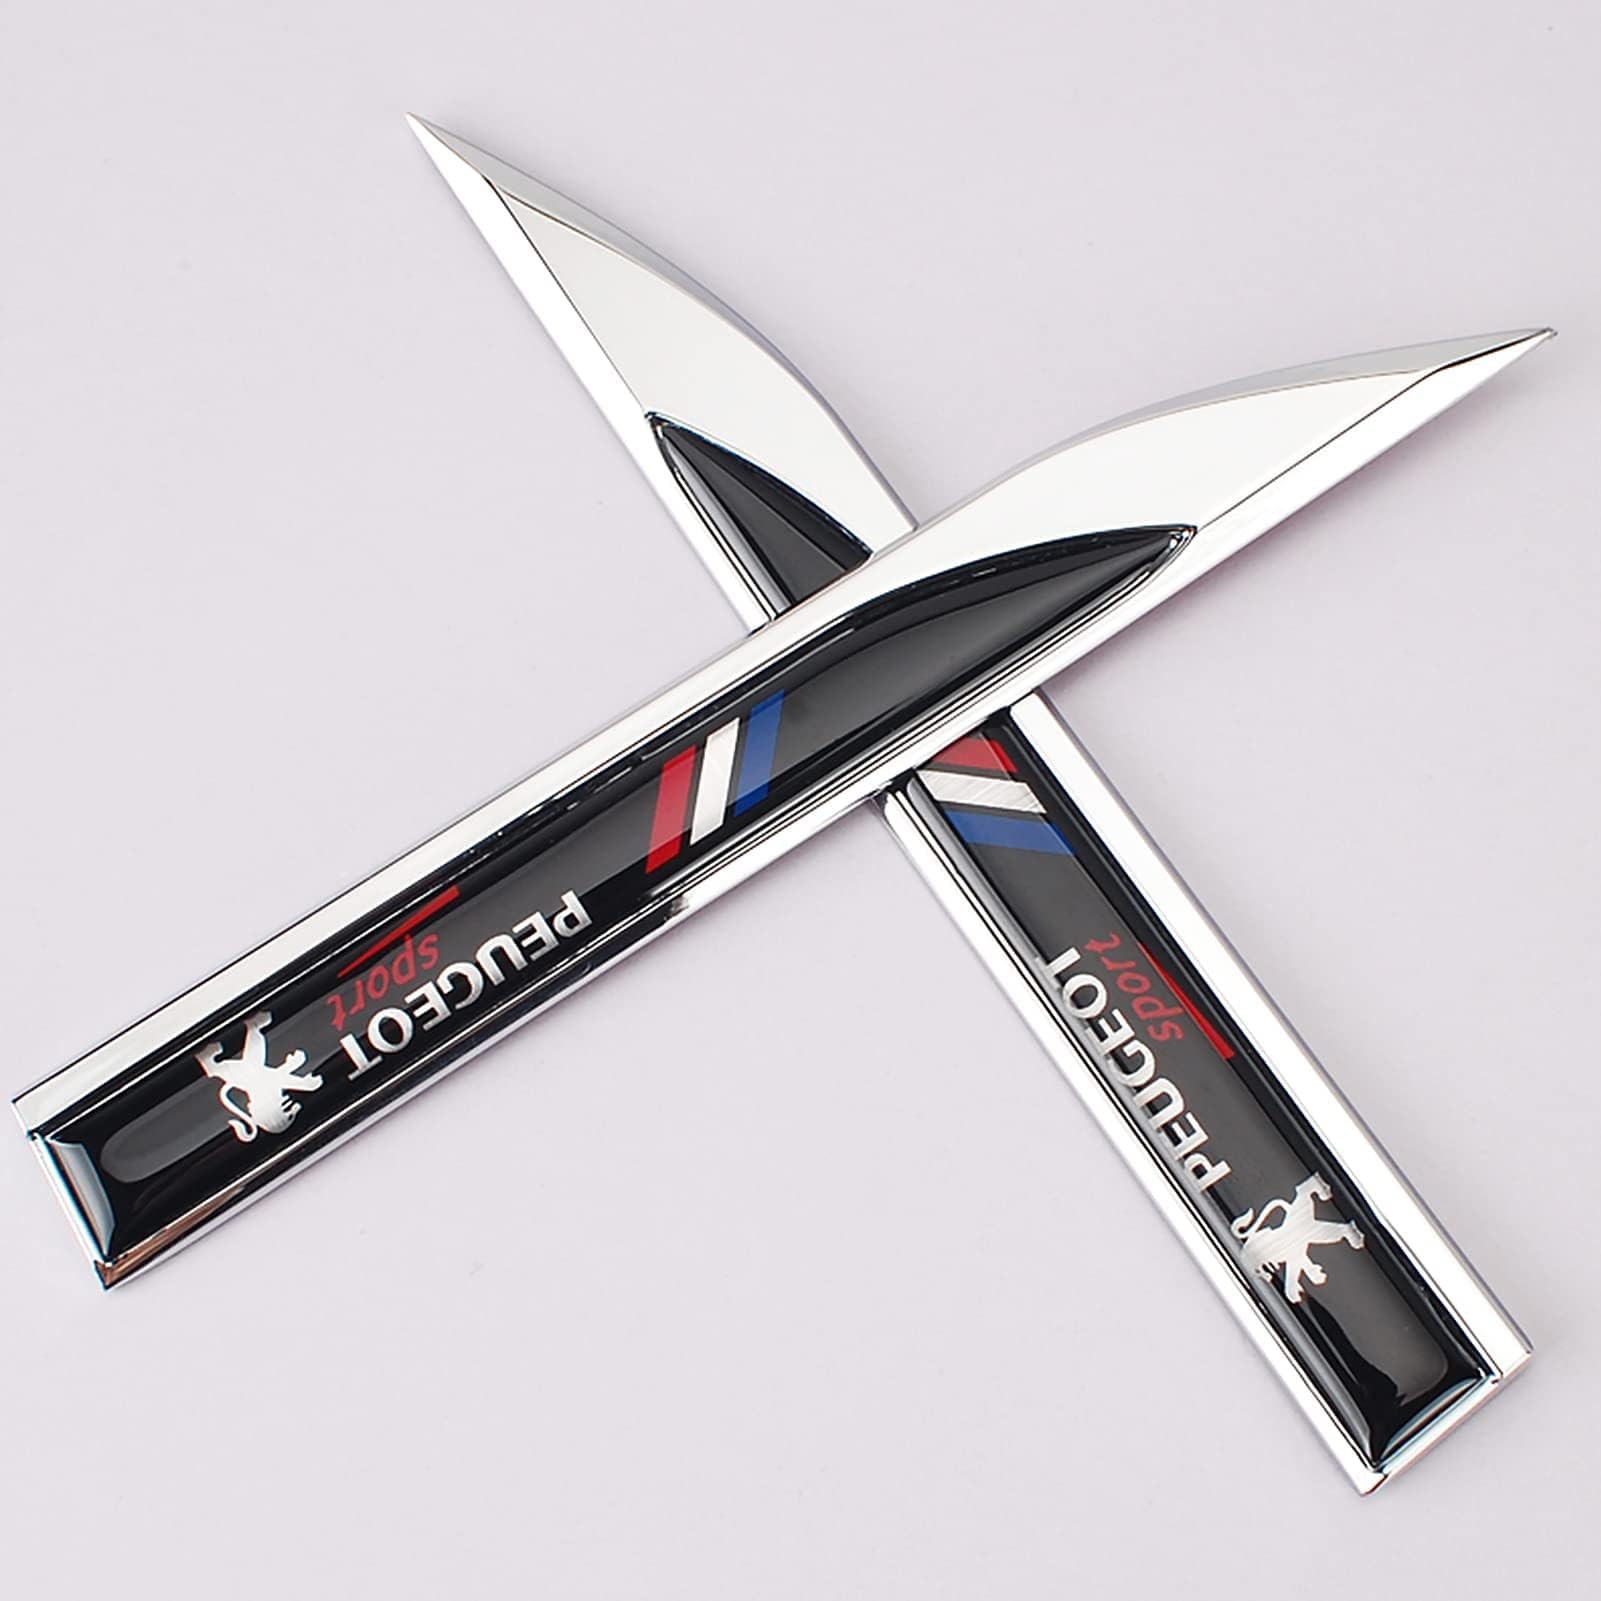 Autoemblem, für Peugeot -Autoabzeichen Emblem Motorhaube Kofferraum Kühlergrillabzeichen Heckemblem wasserdicht von XWSBUDE